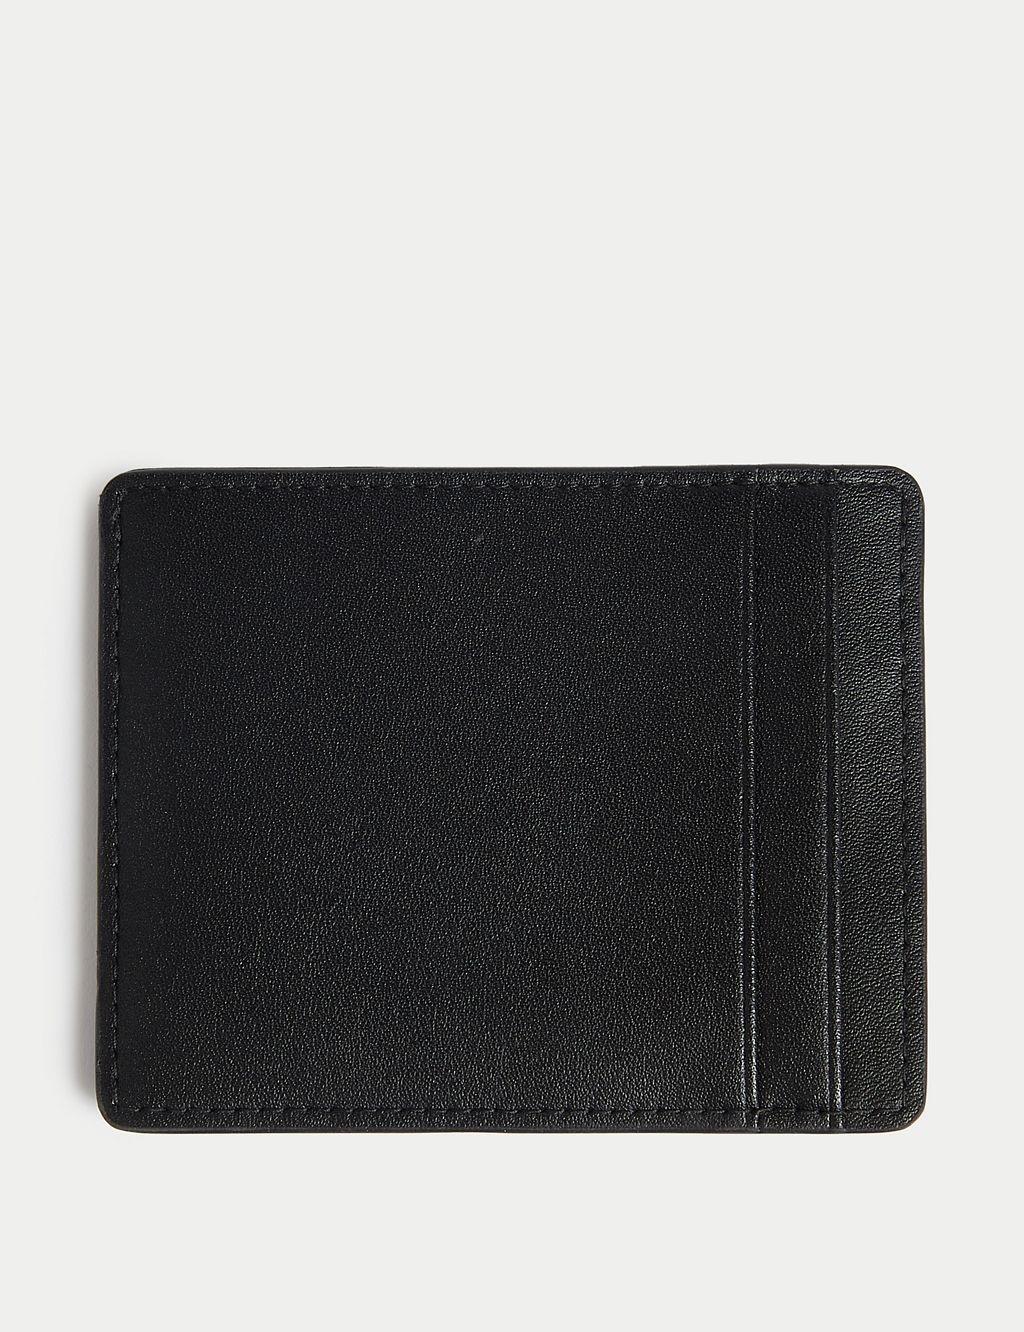 Leather Cardsafe™ Card Holder 1 of 3